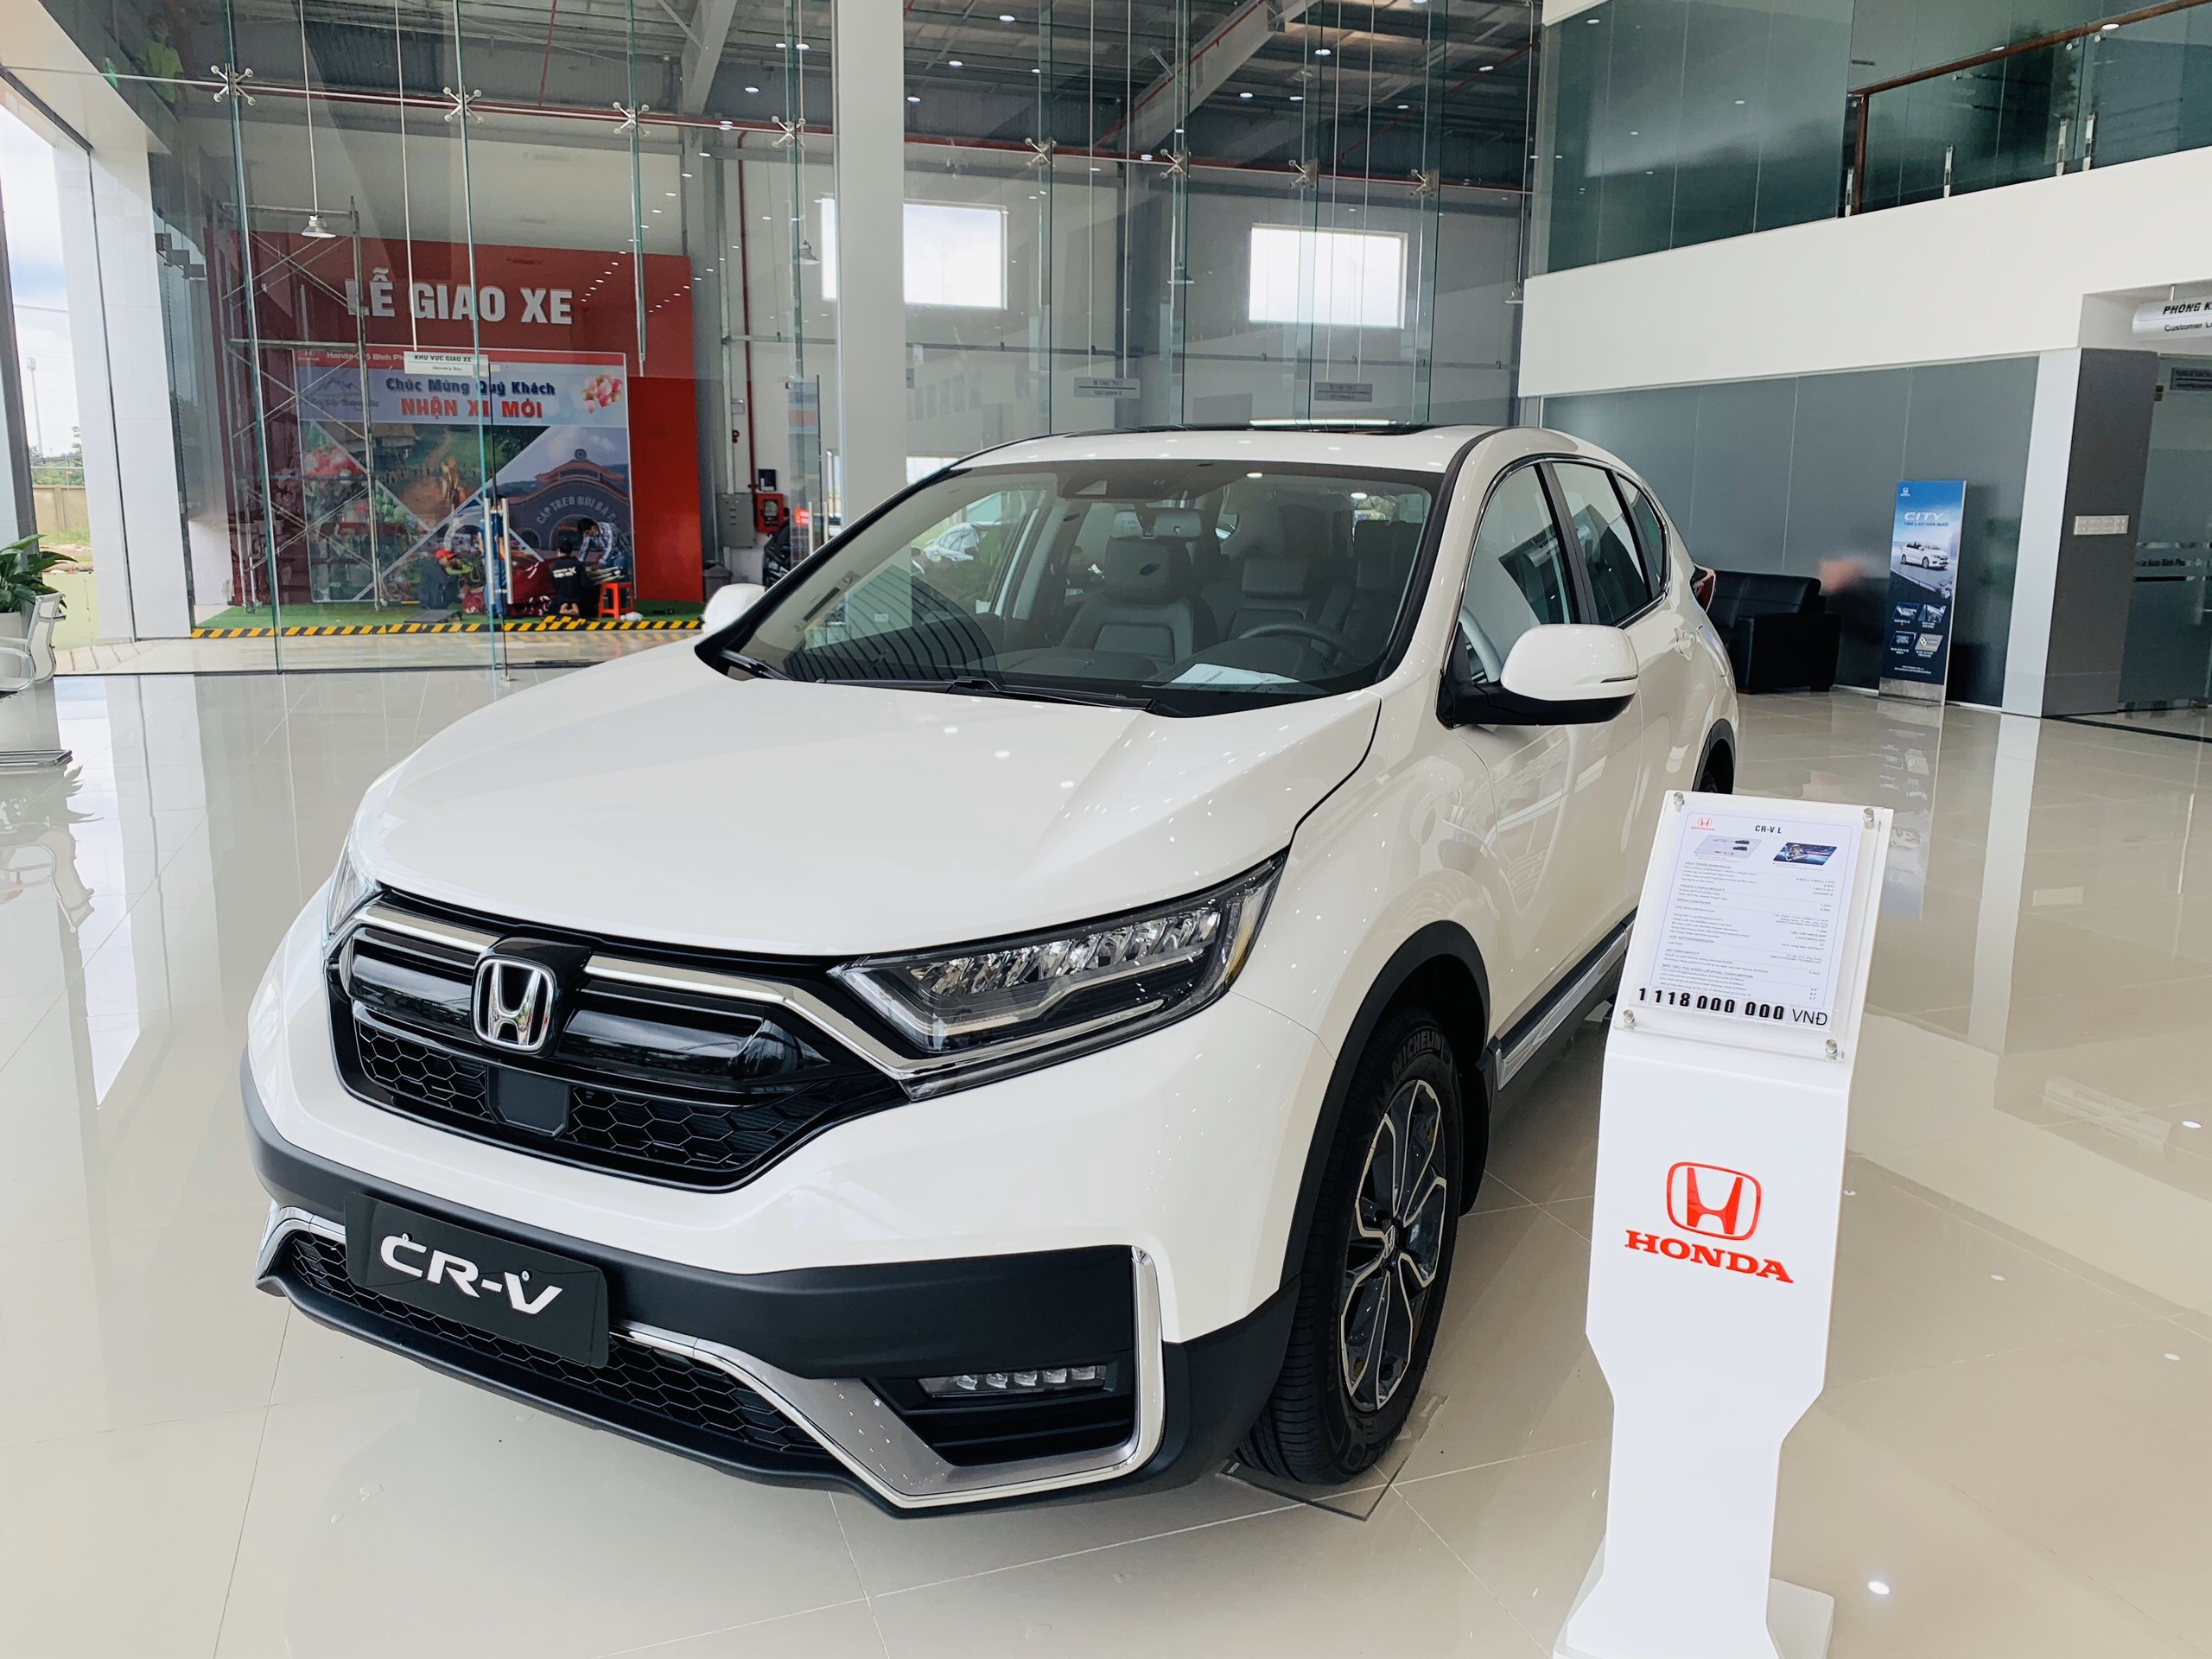 Honda CRV LSE 2022 bản đặc biệt thông số giá bán khuyến mãi